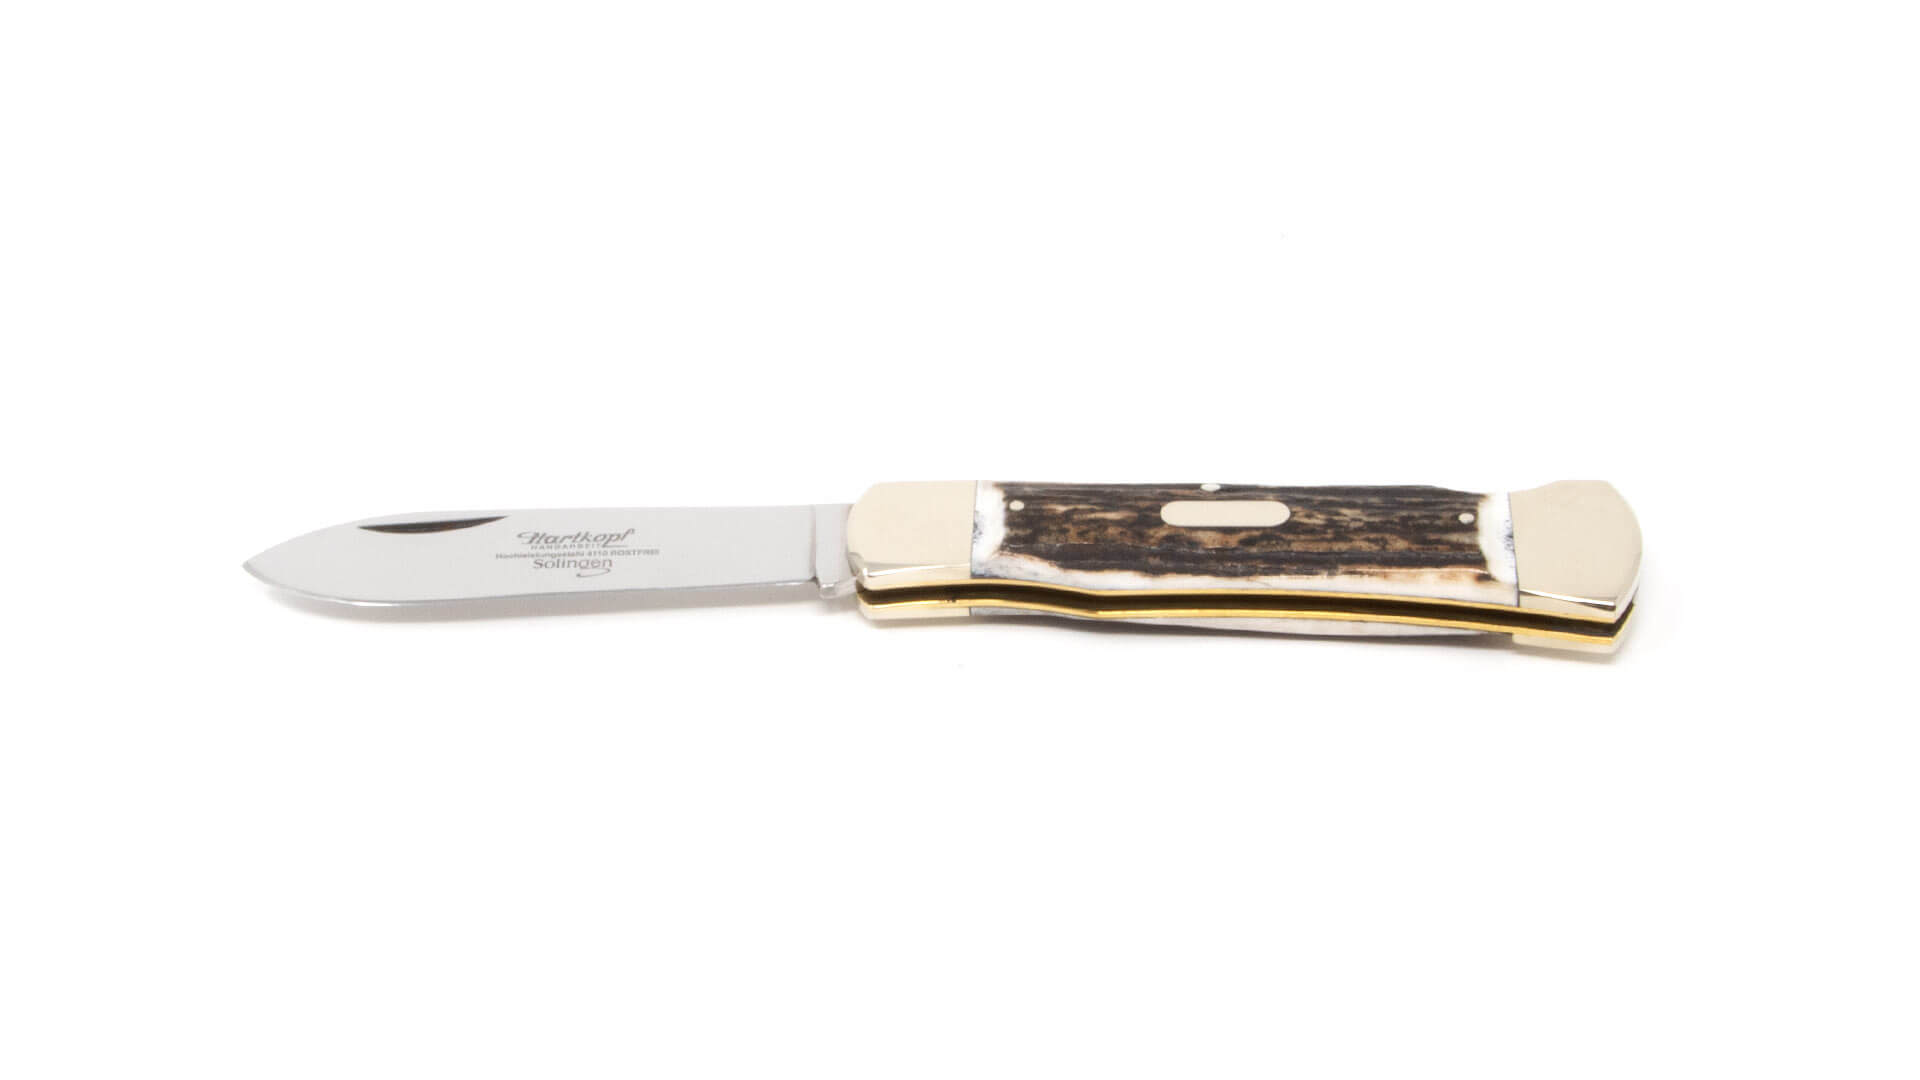 Hartkopf hunting pocket knife